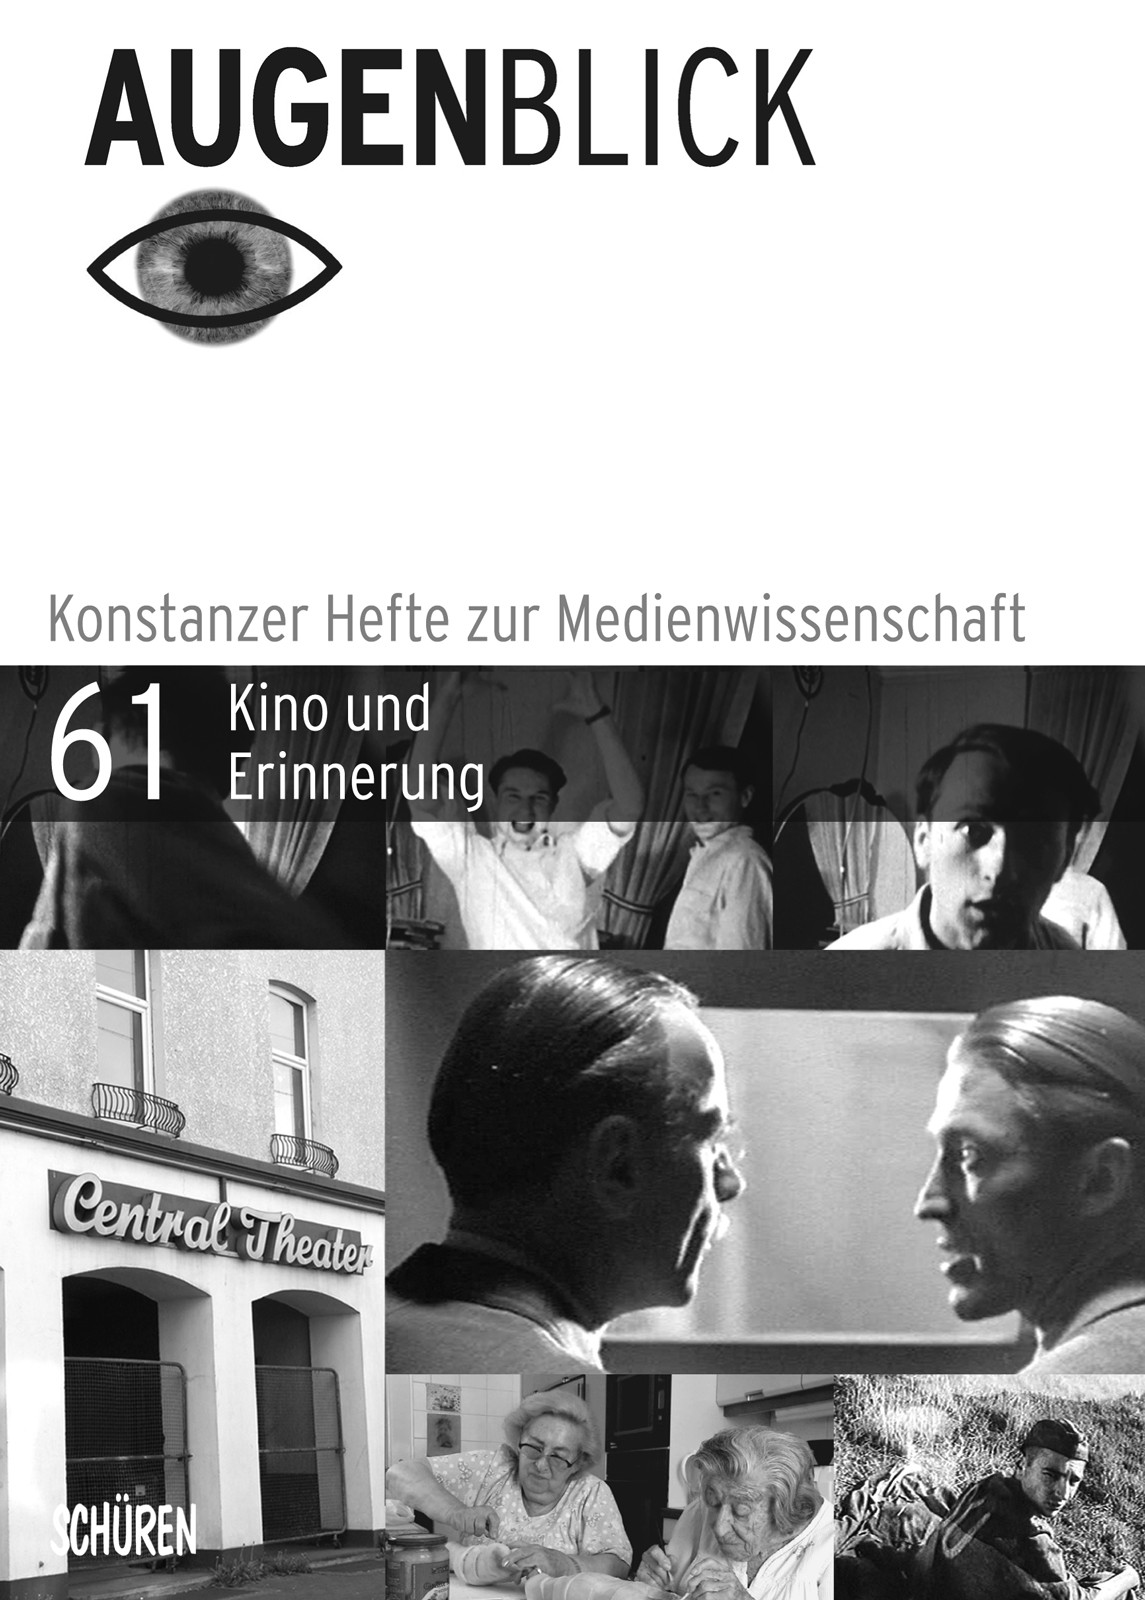 Cover der Zeitschrift Augenblick, Ausgabe 61